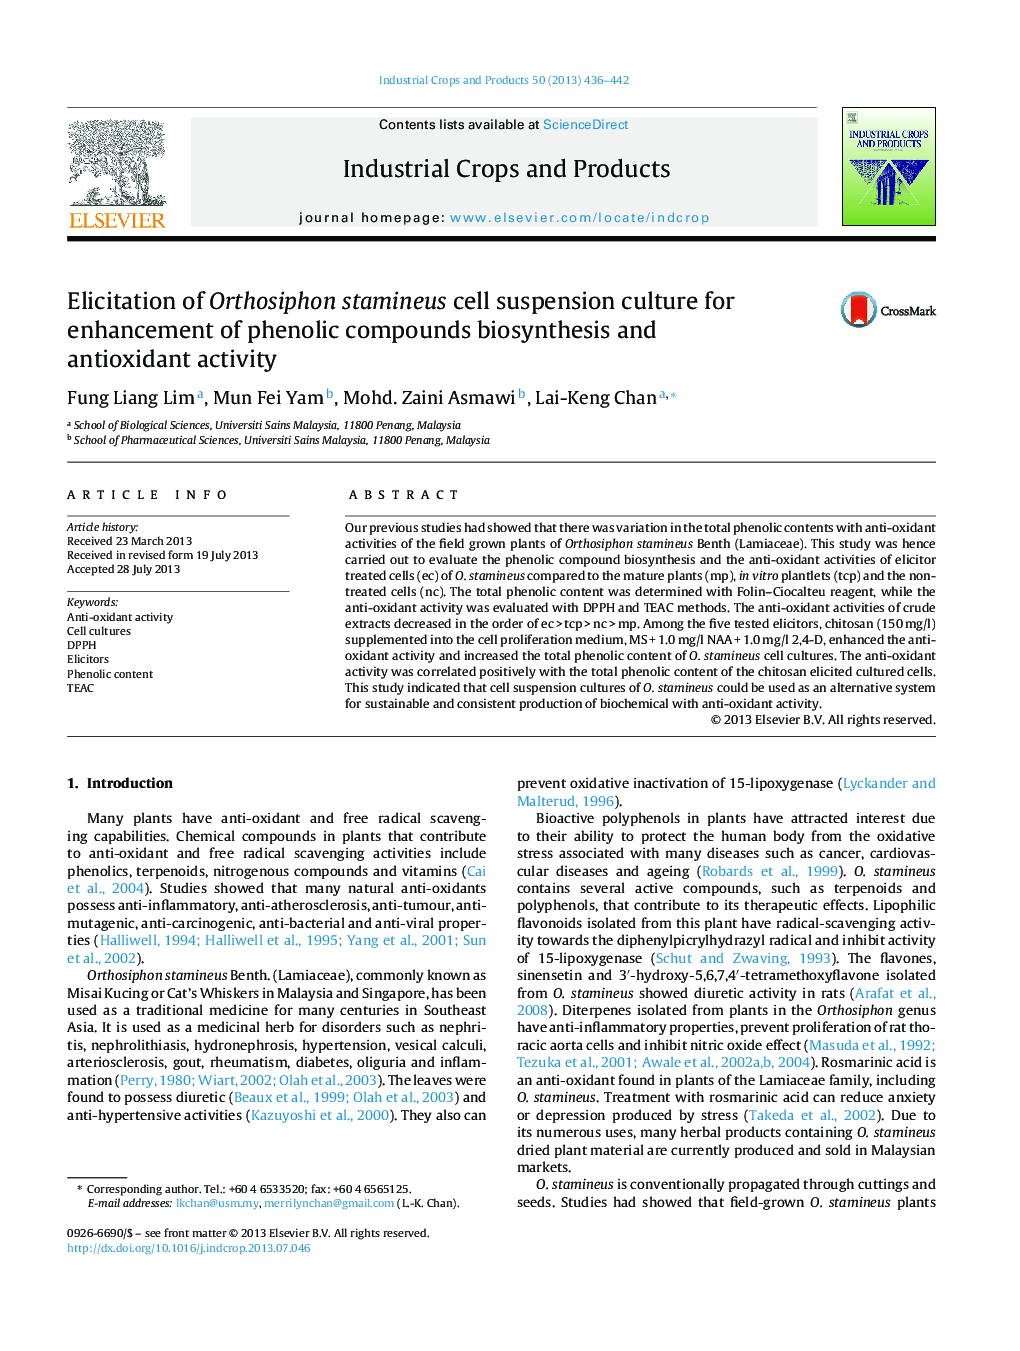 جداسازی کشت تعلیق سلولهای استاتیموس ارتوسیفون برای افزایش بیوسنتز ترکیبات فنلی و فعالیت آنتیاکسیدانی 